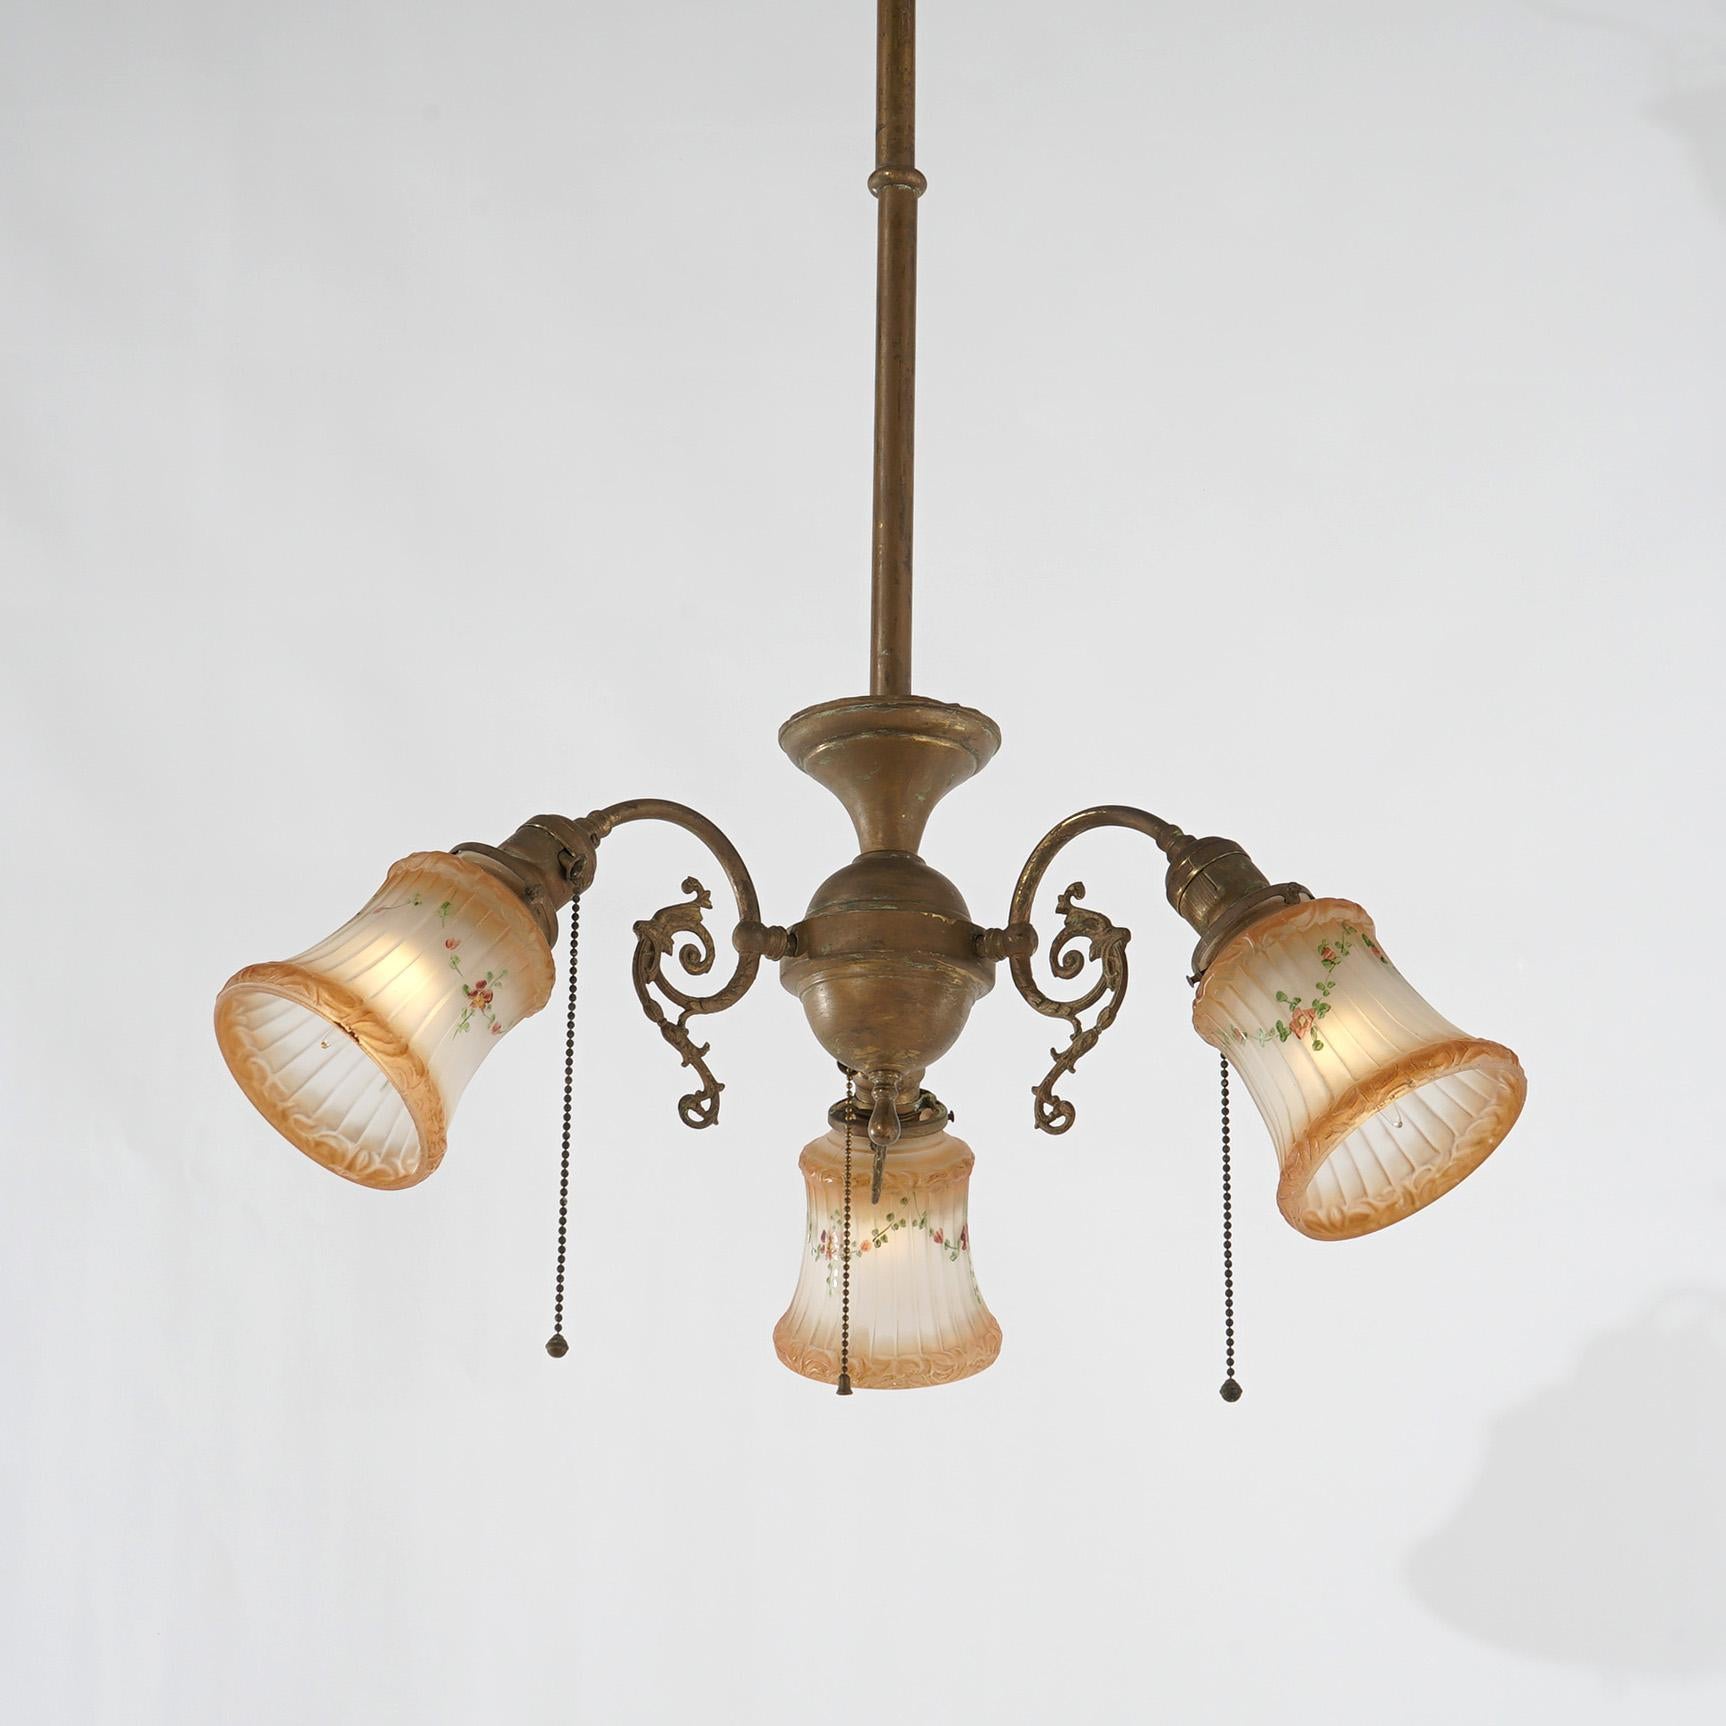 Suspension ancienne en métal doré Arts & Crafts à trois lumières avec bras en forme de volutes et abat-jour en verre, Circa 1910

Dimensions : 37,5''H x 20,5''L x 20,5''P